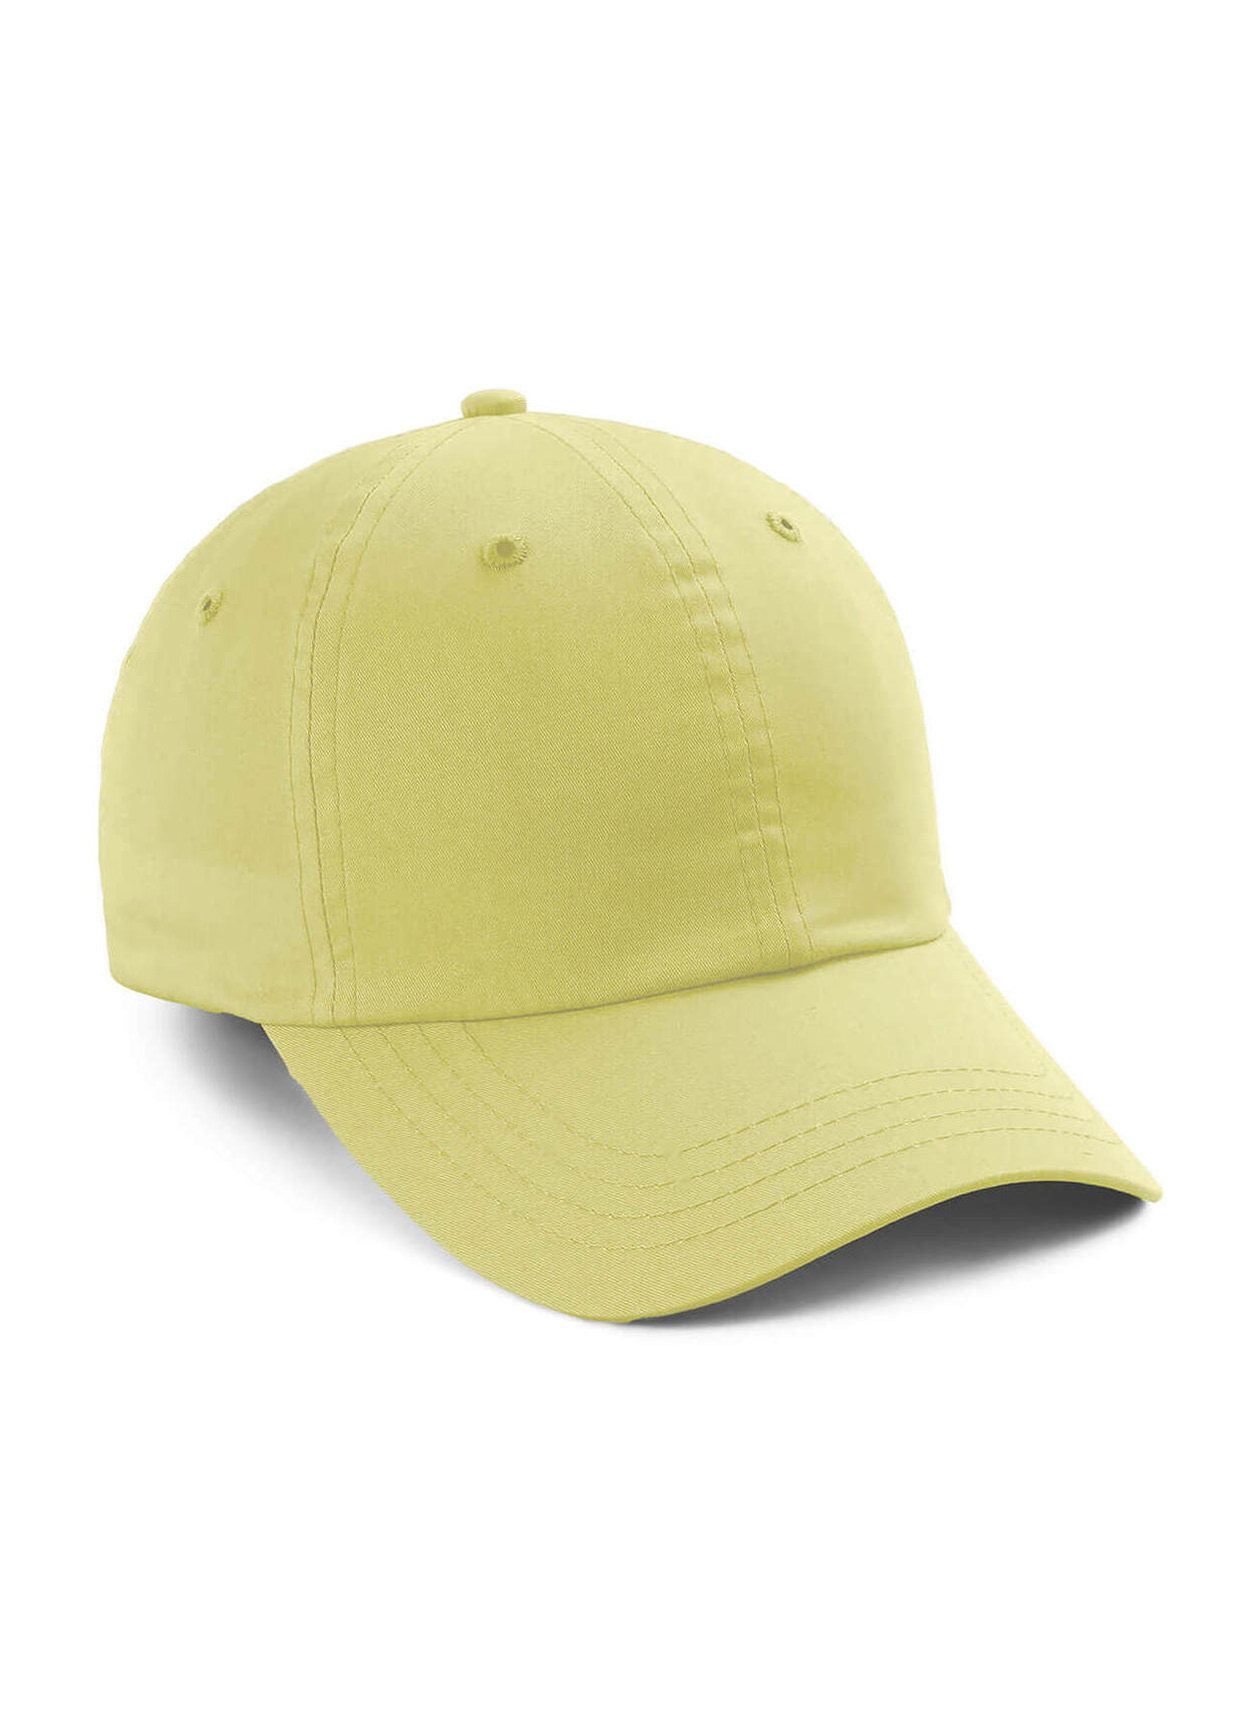 Imperial Sunshine The Zero Lightweight Cotton Hat